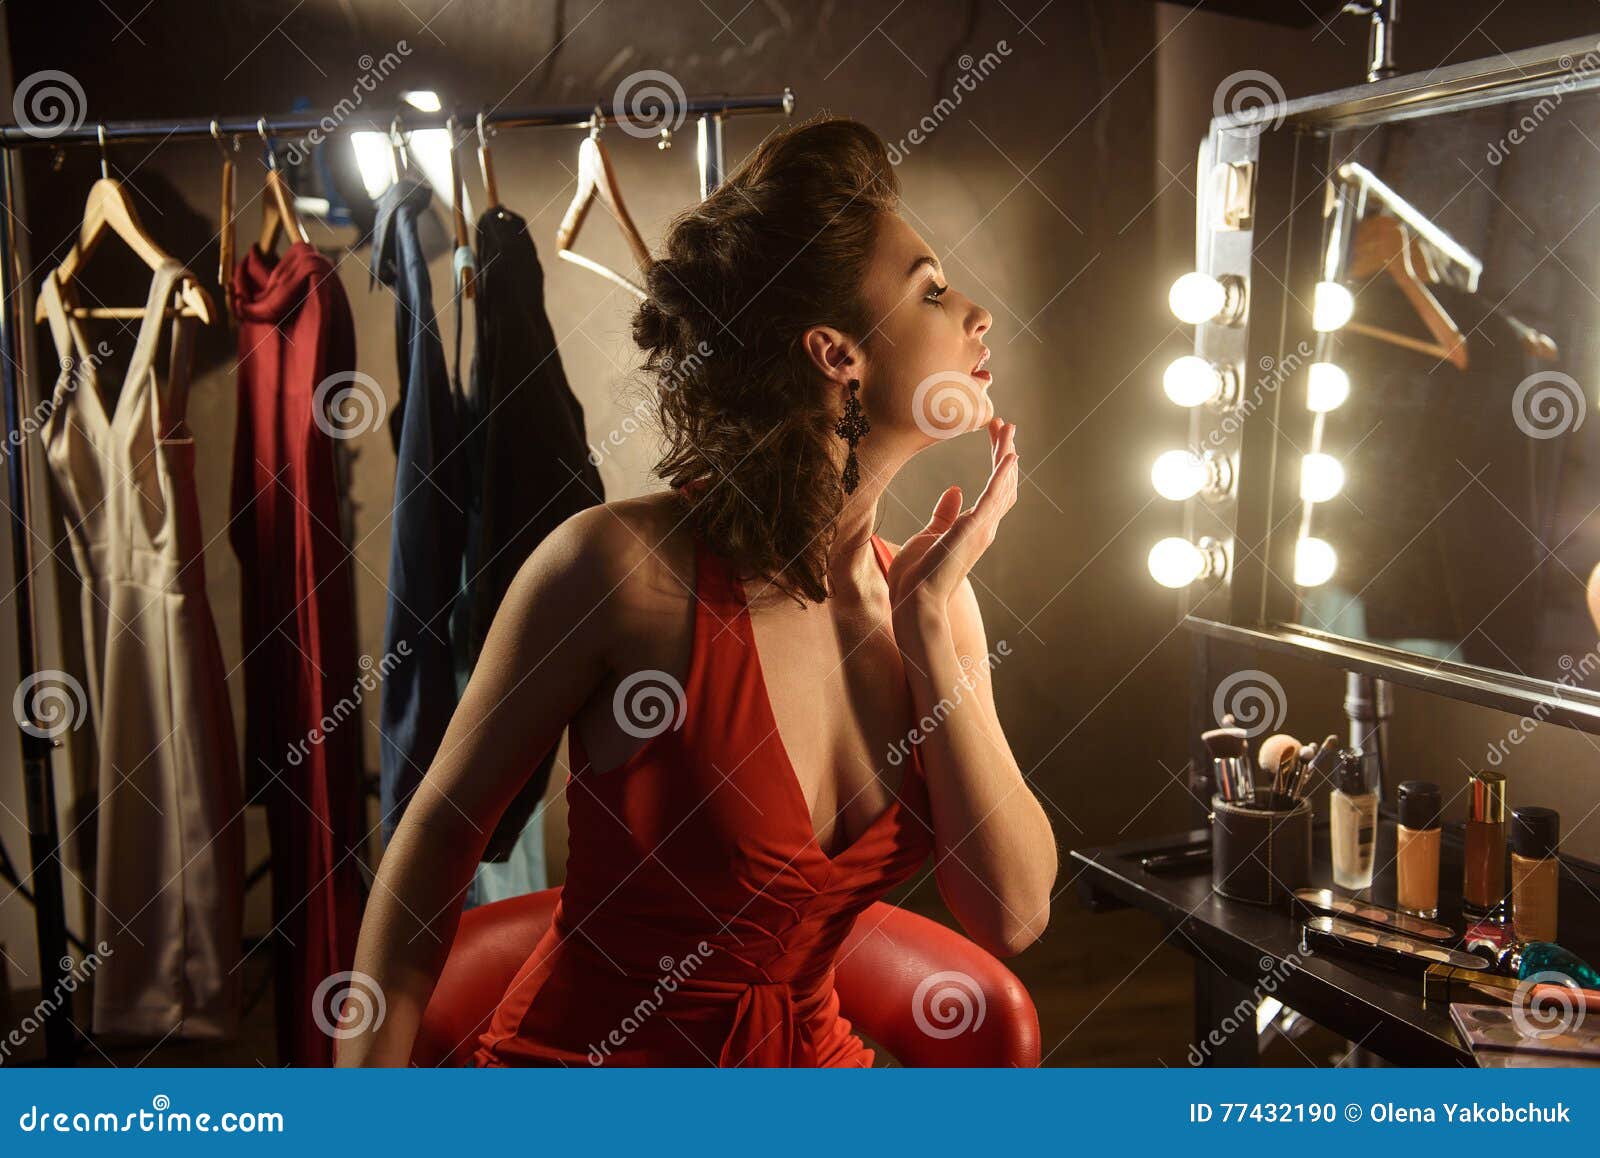 Одеваясь на ощупь. Девушка в гримерке. Фотосессия в гримерке. Девушка в зеркале. Гримерка актрисы.